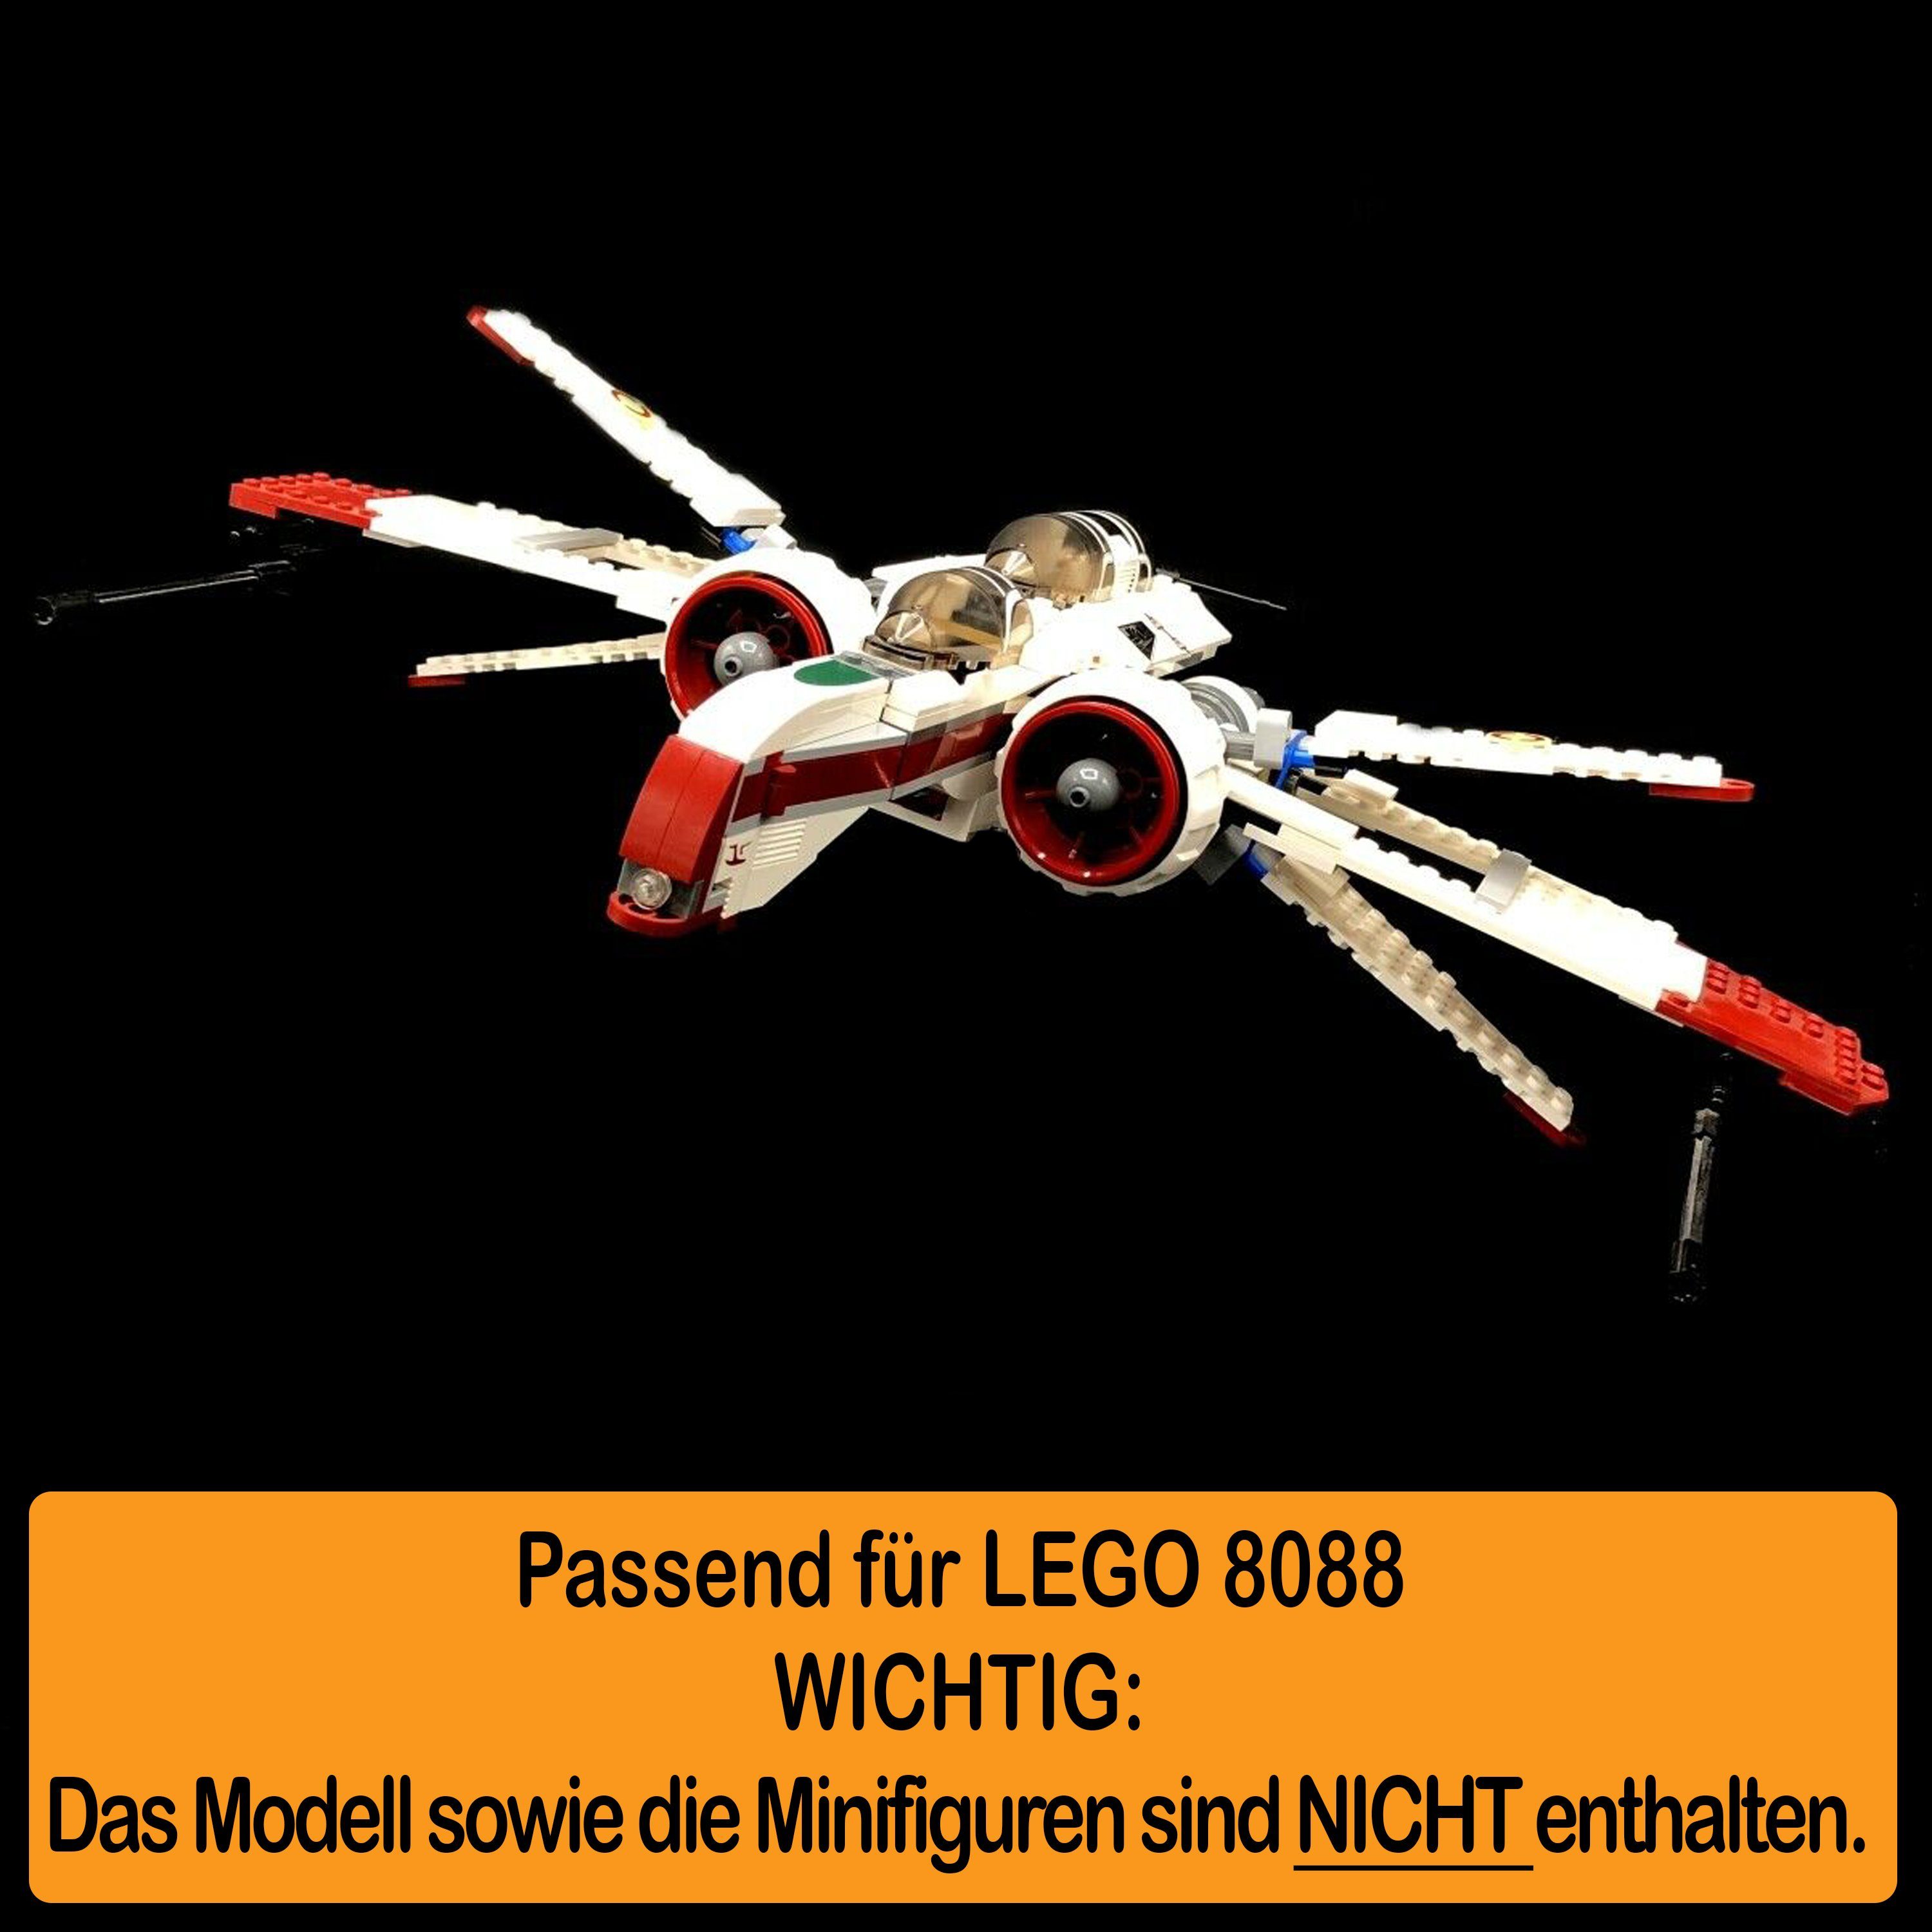 selbst Stand in Made AREA17 ARC-170 für und Starfighter 100% LEGO (verschiedene Positionen Display Standfuß Acryl einstellbar, zusammenbauen), 8088 Germany zum Winkel